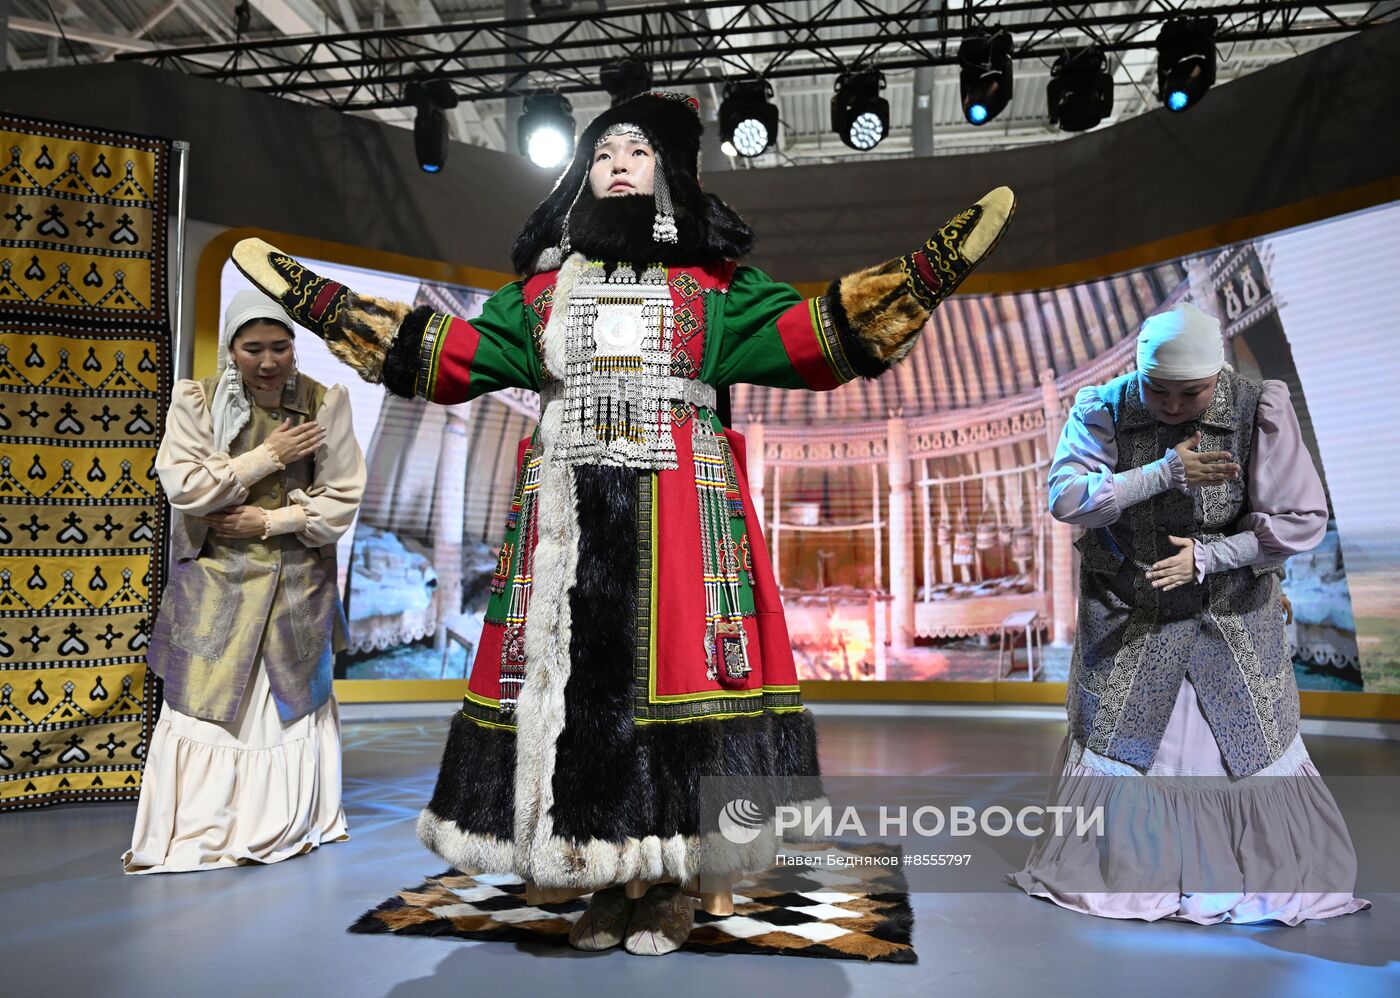 Выставка "Россия". Свадебная церемония с элементами национальных якутских традиций